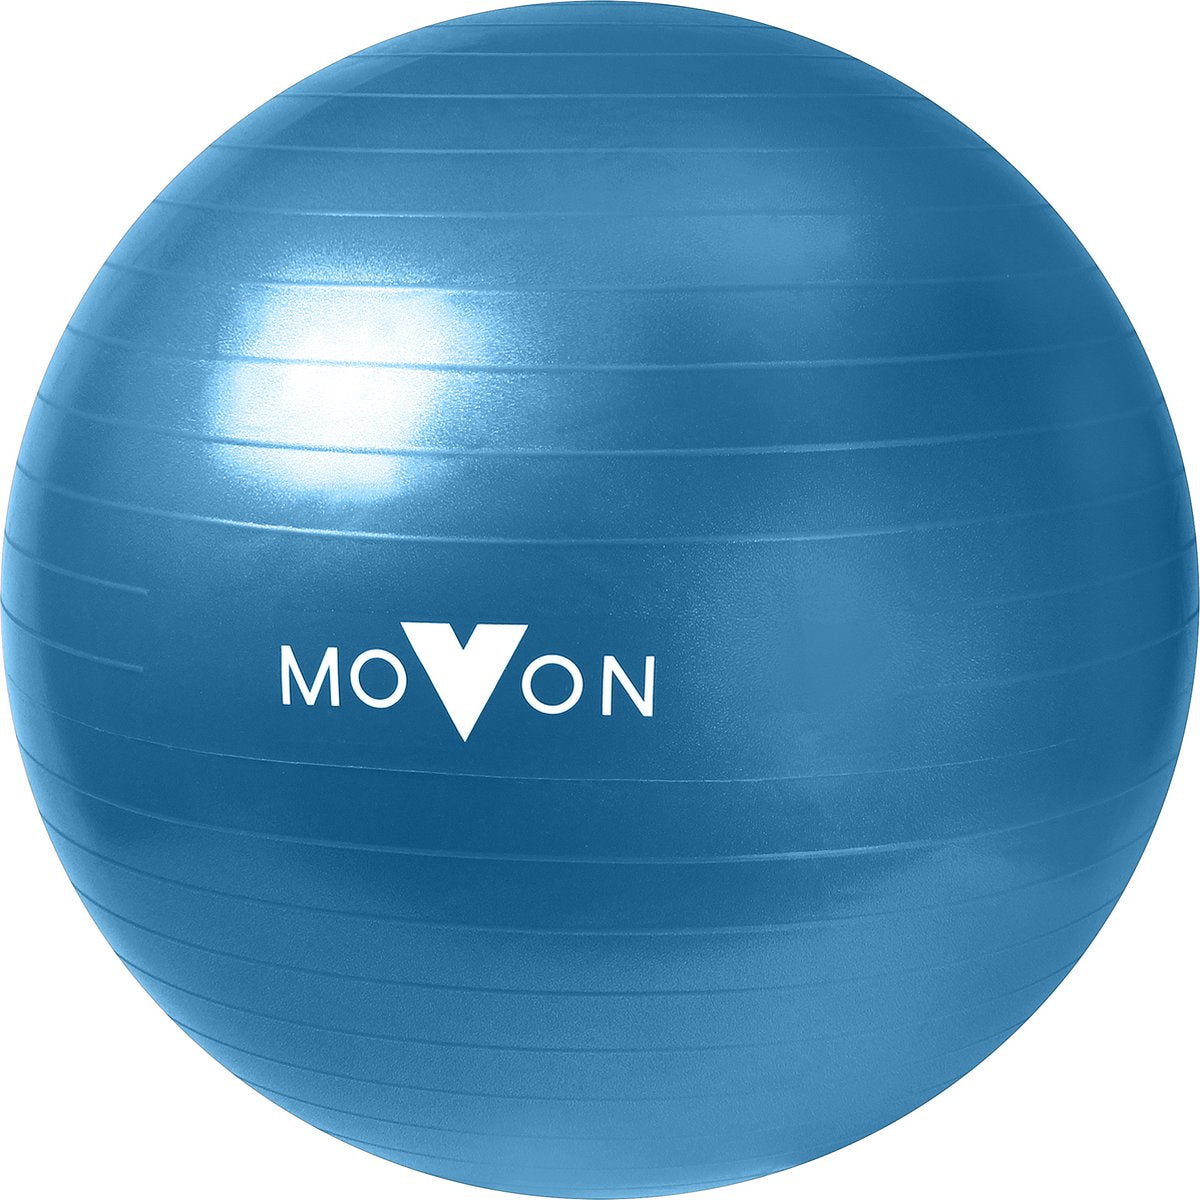 MOVON Ballon de gymnastique anti-éclatement Ballon de yoga Ballon d'équilibre 55 cm Bleu